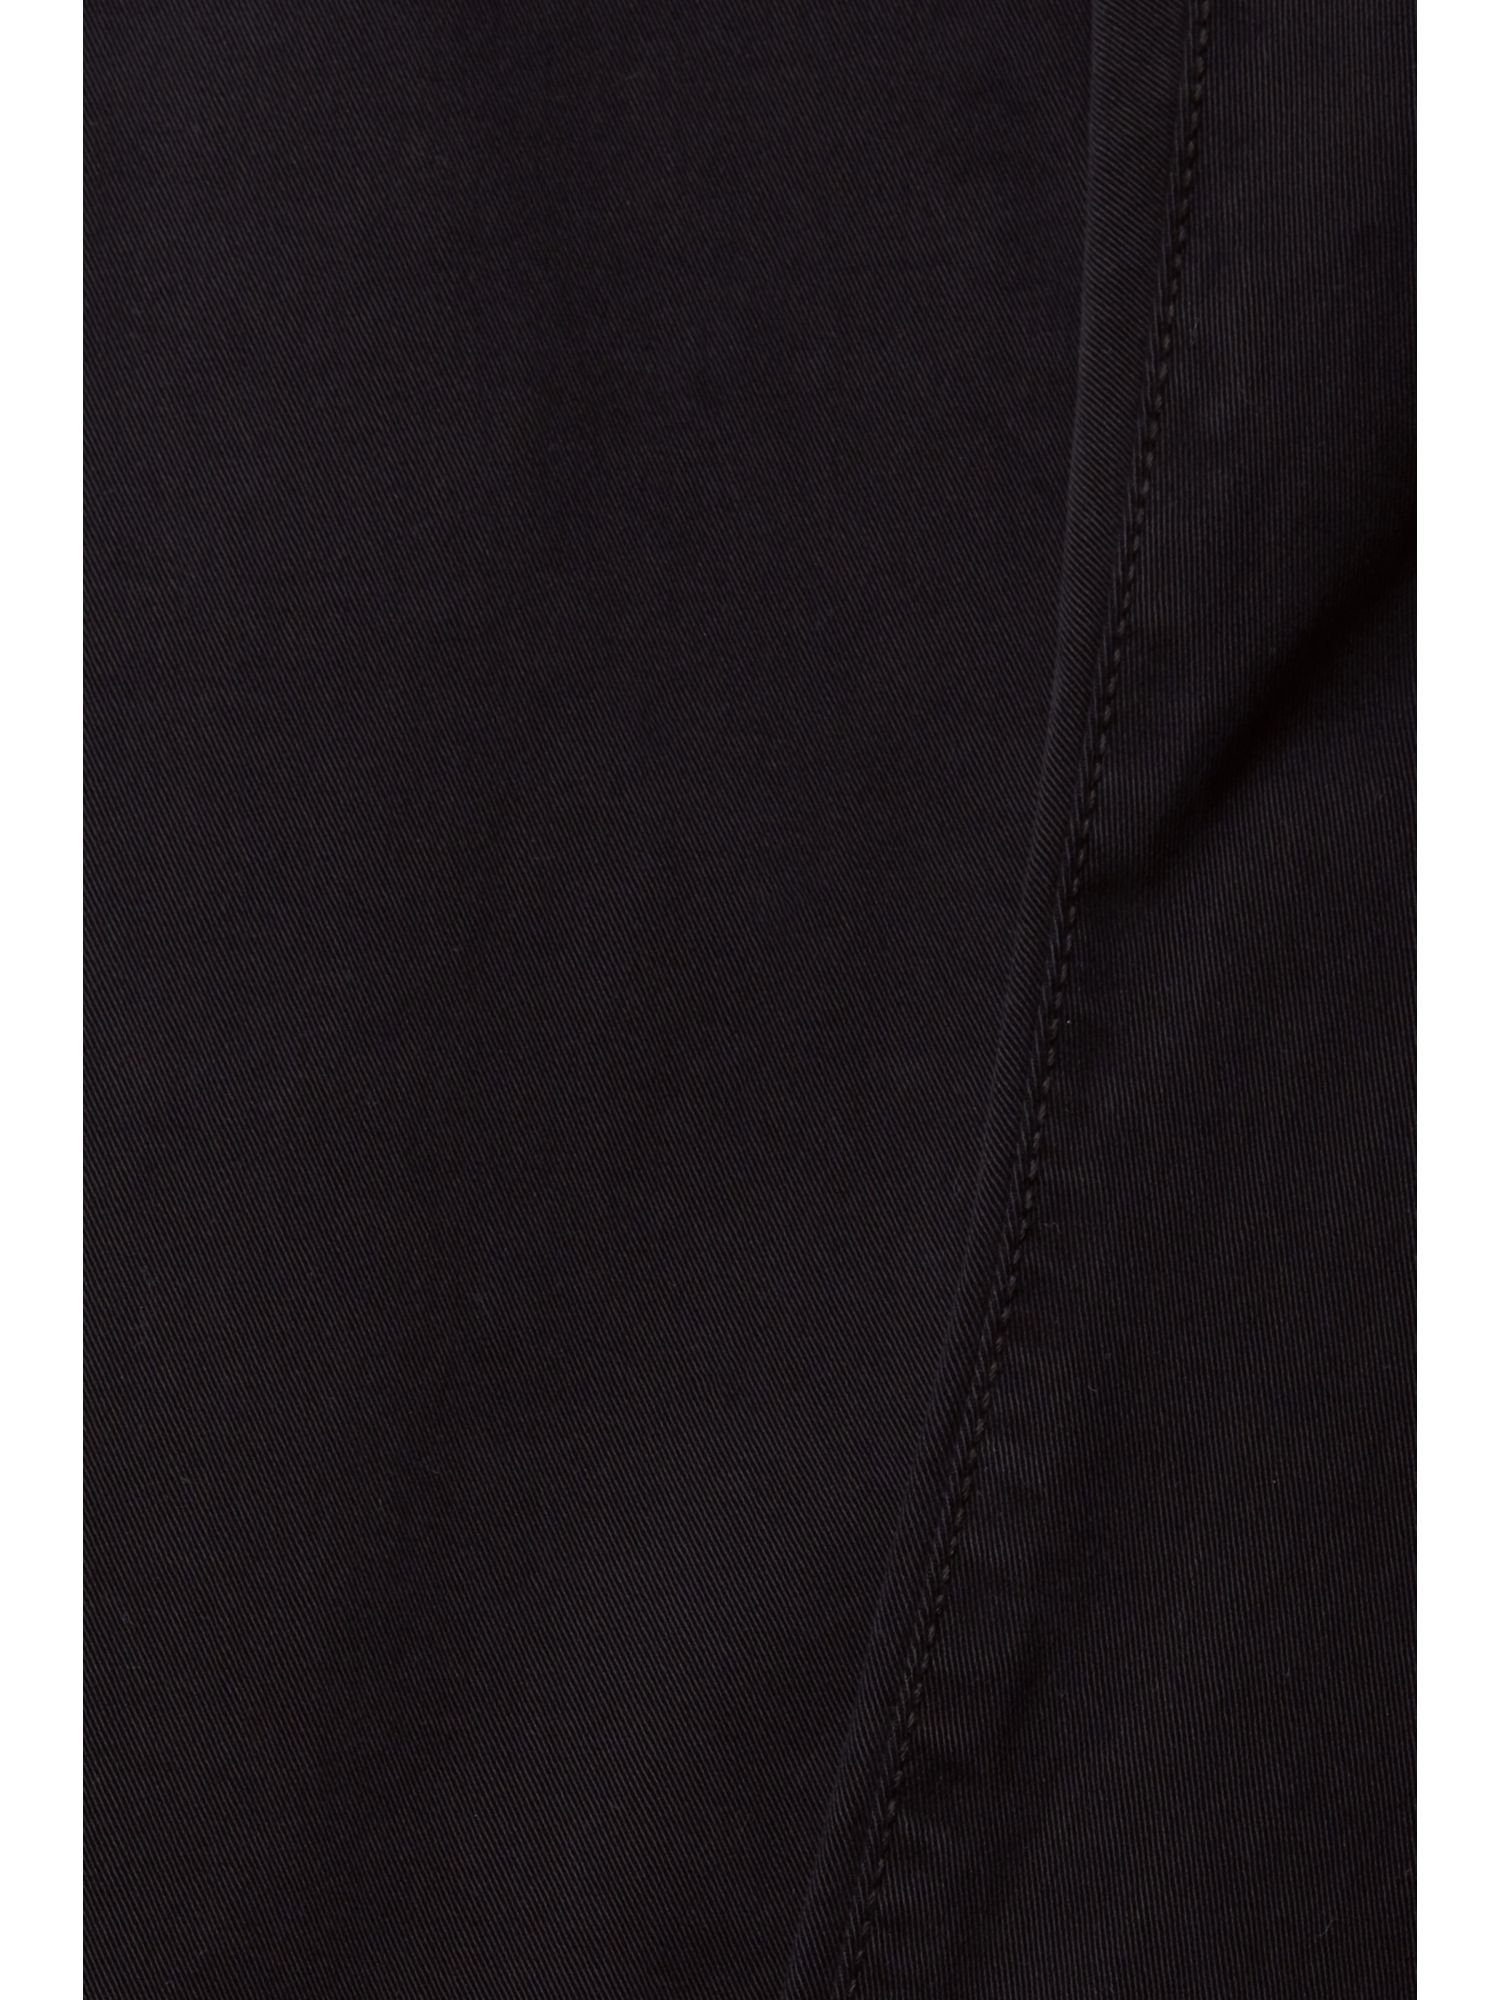 BLACK Stoffhose Slim-Fit-Hose Baumwolle aus Esprit organischer